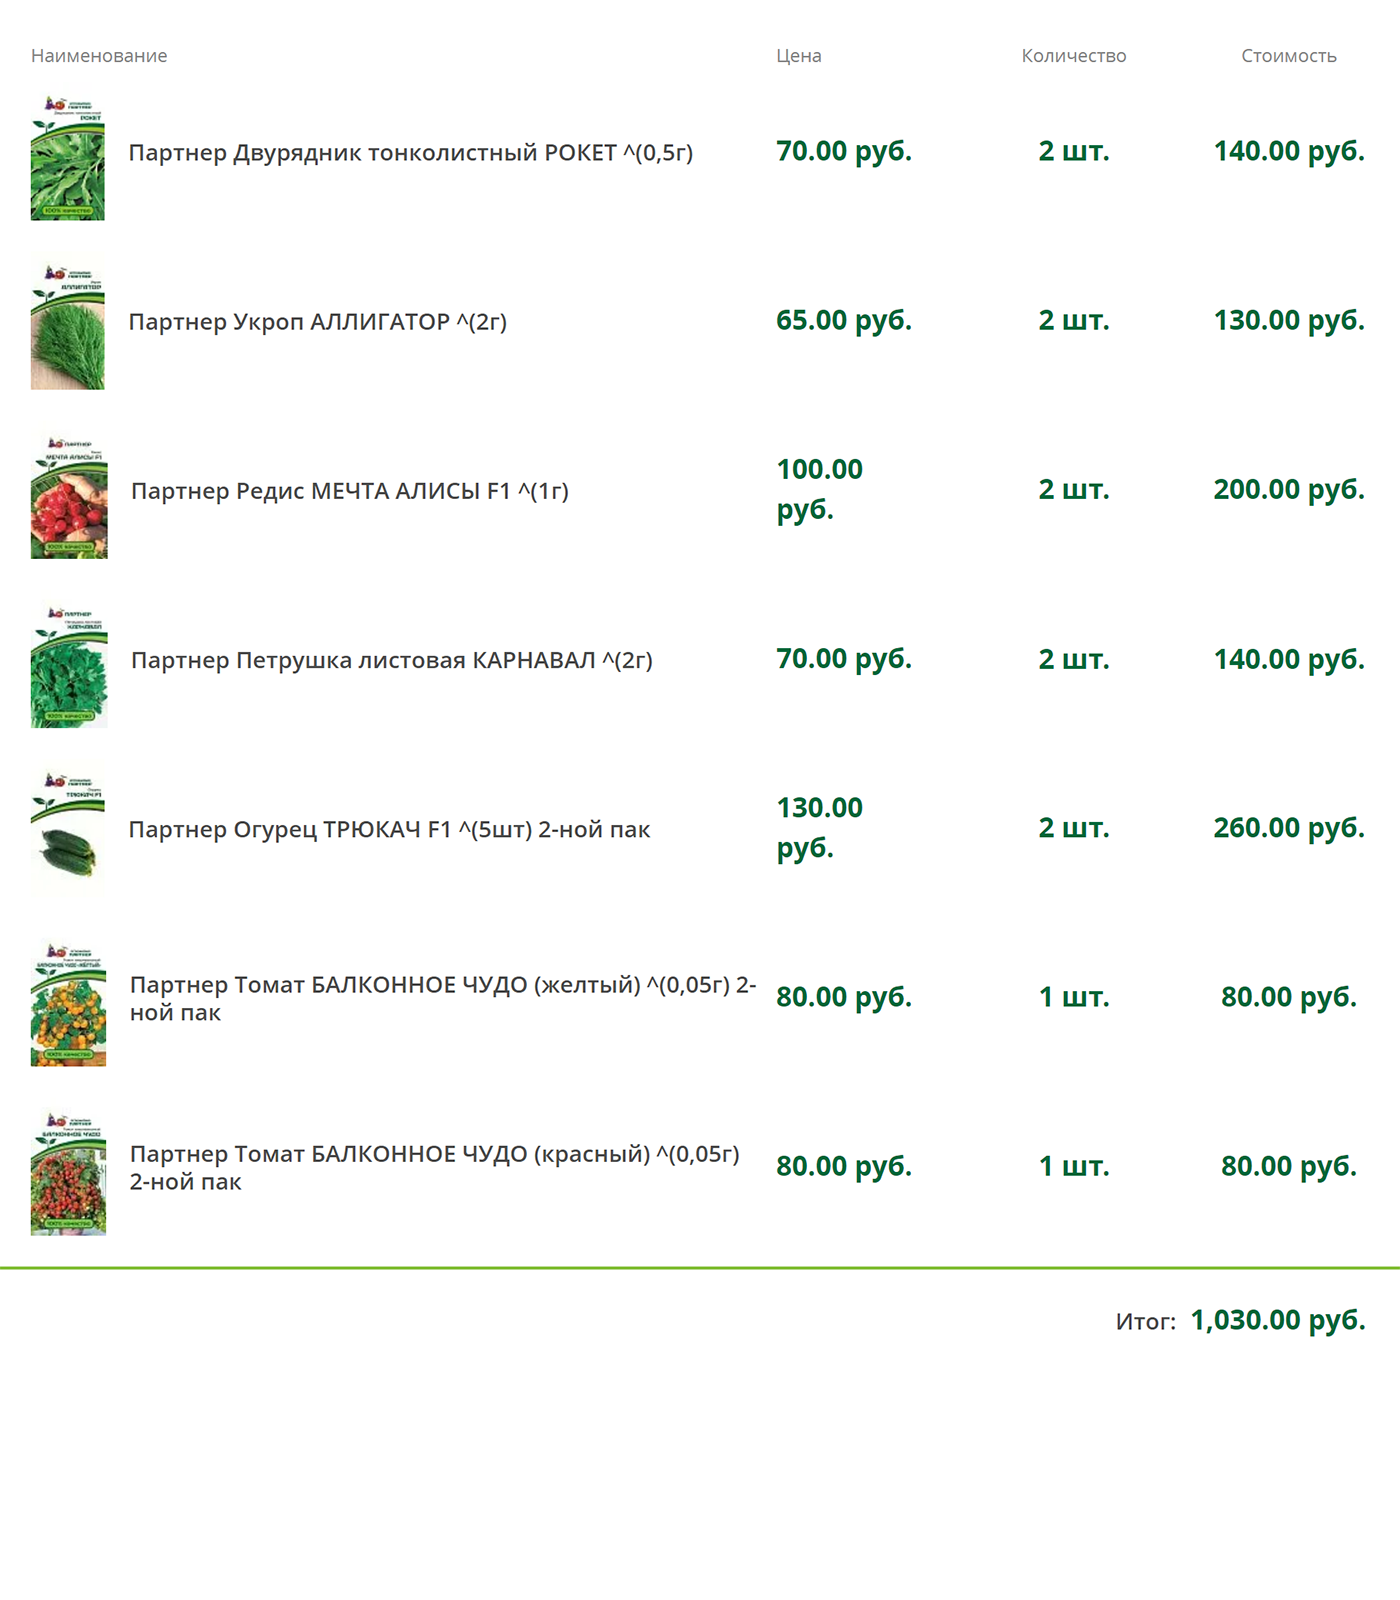 Заказ семян на сайте производителя «Агрофирма-партнер». В дальнейшем покупали в основном семена этого производителя, но на маркетплейсах, где доставка быстрее